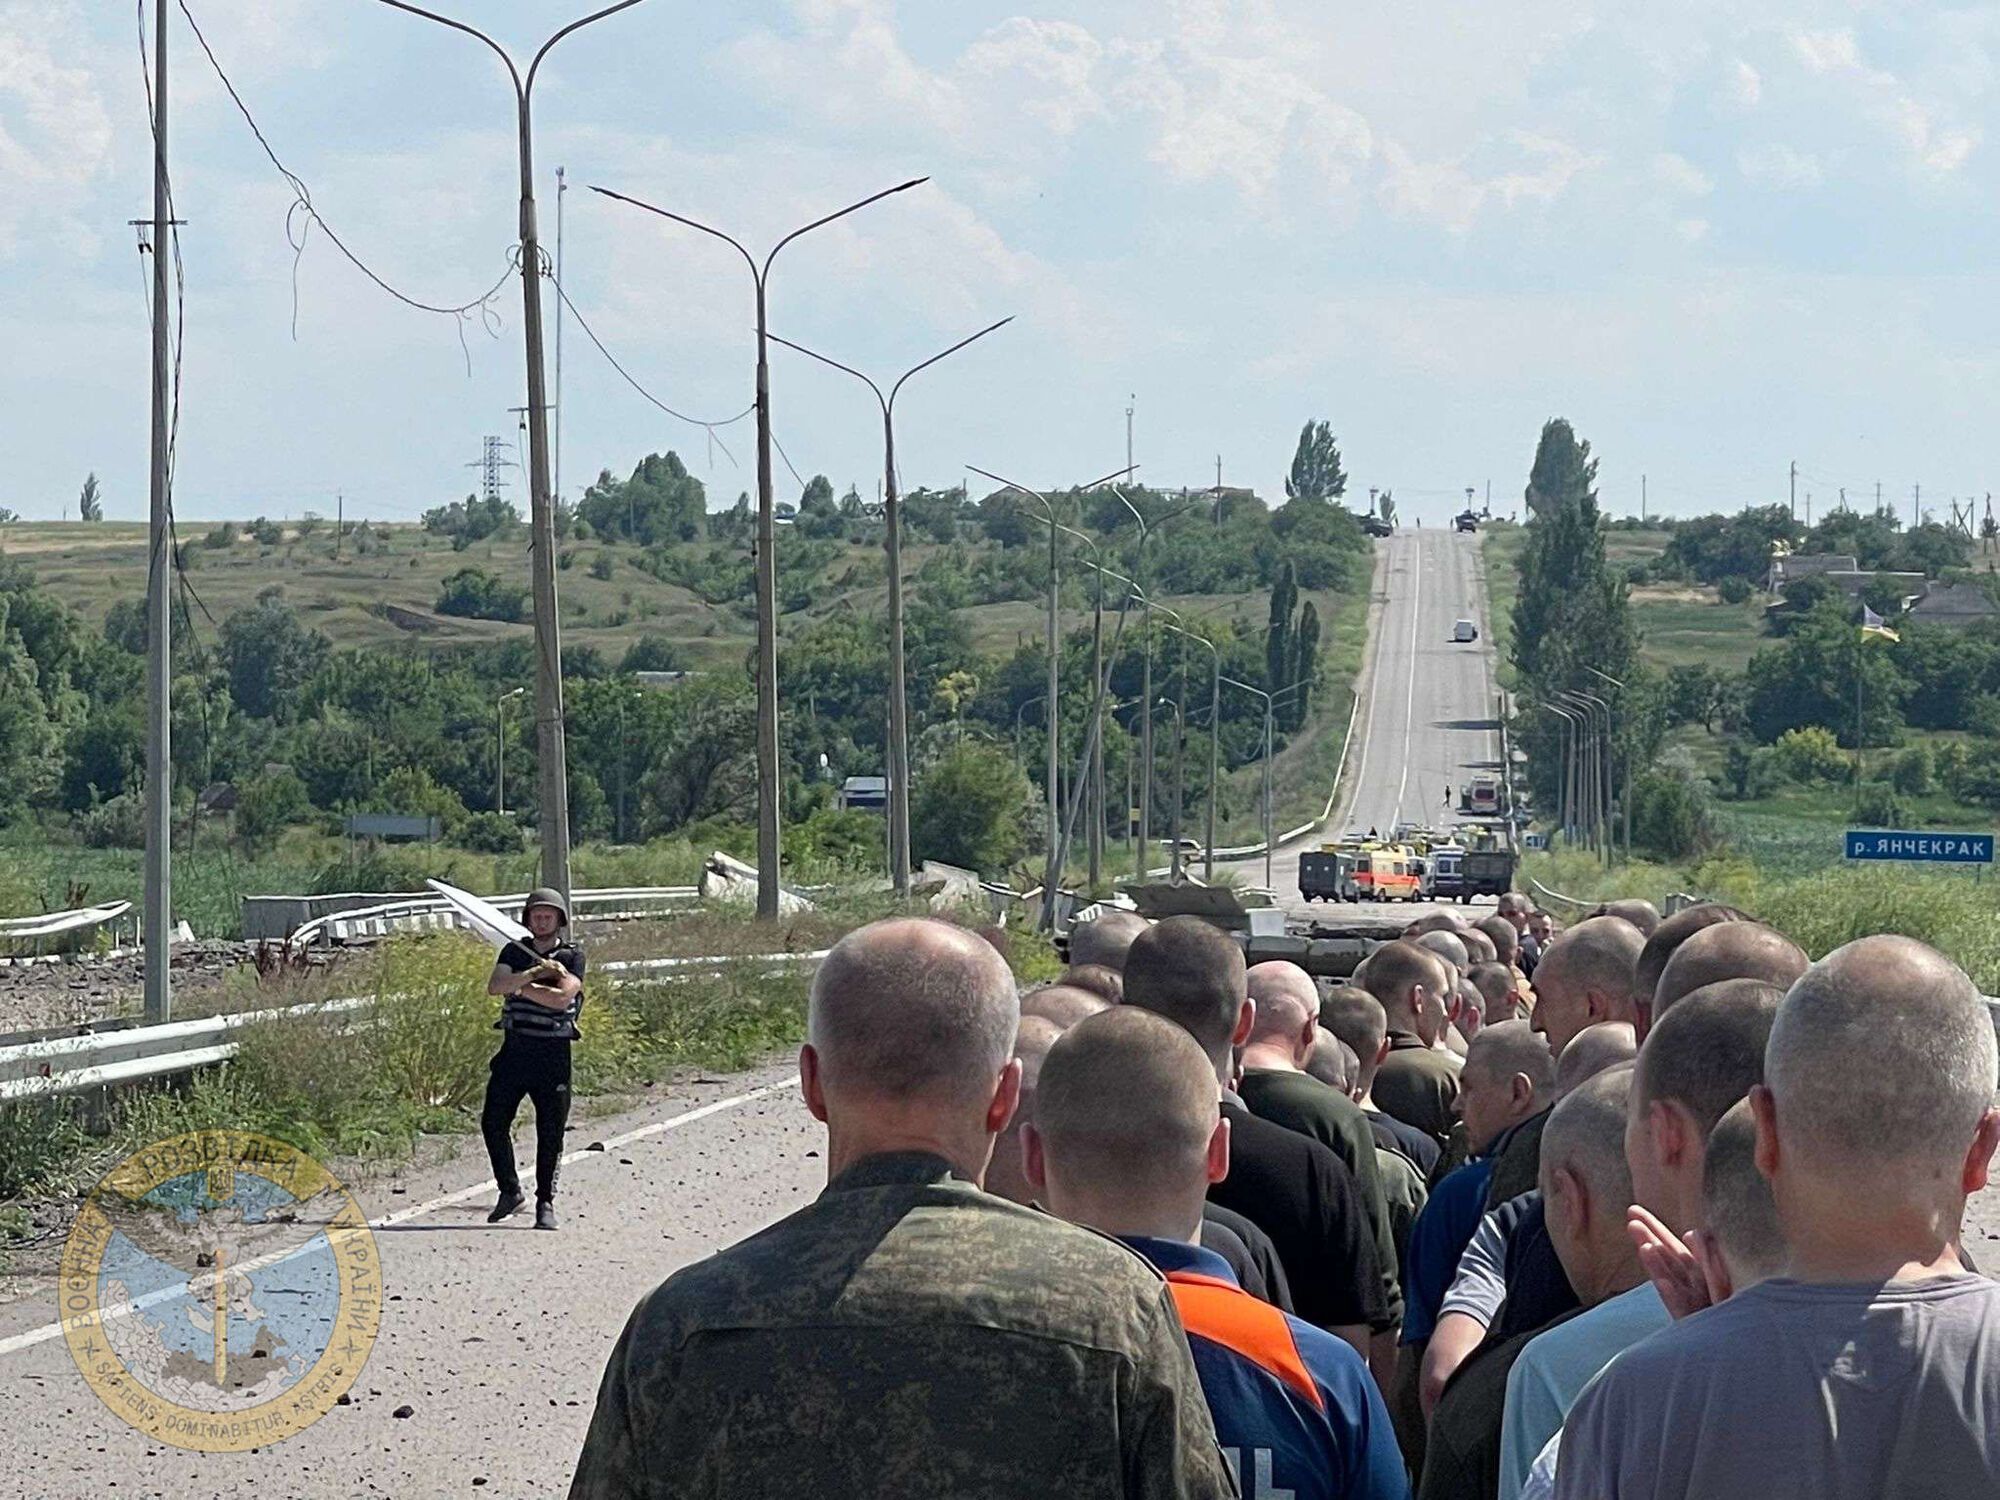 144 захисників України звільнено з полону. Більшість з них тяжко поранено